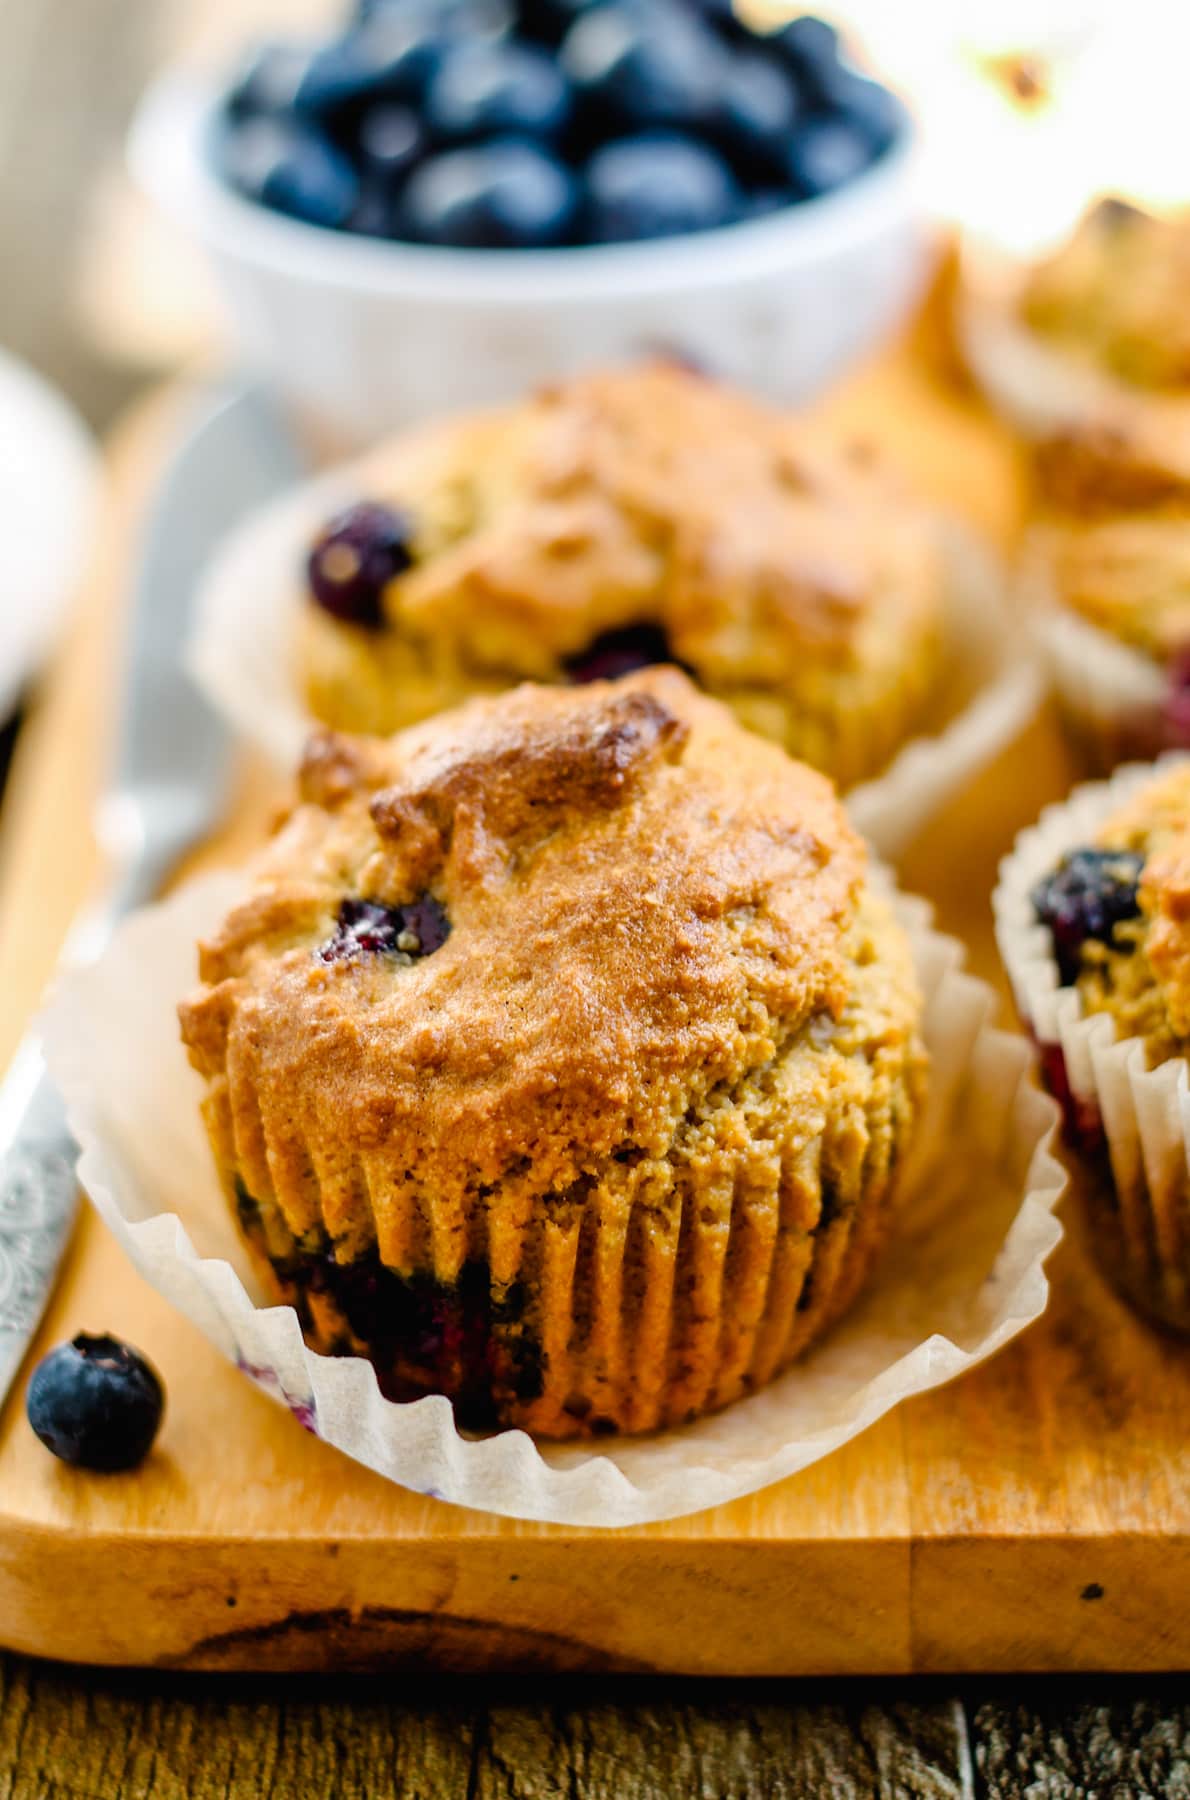 A platter of almond flour blueberry muffins.